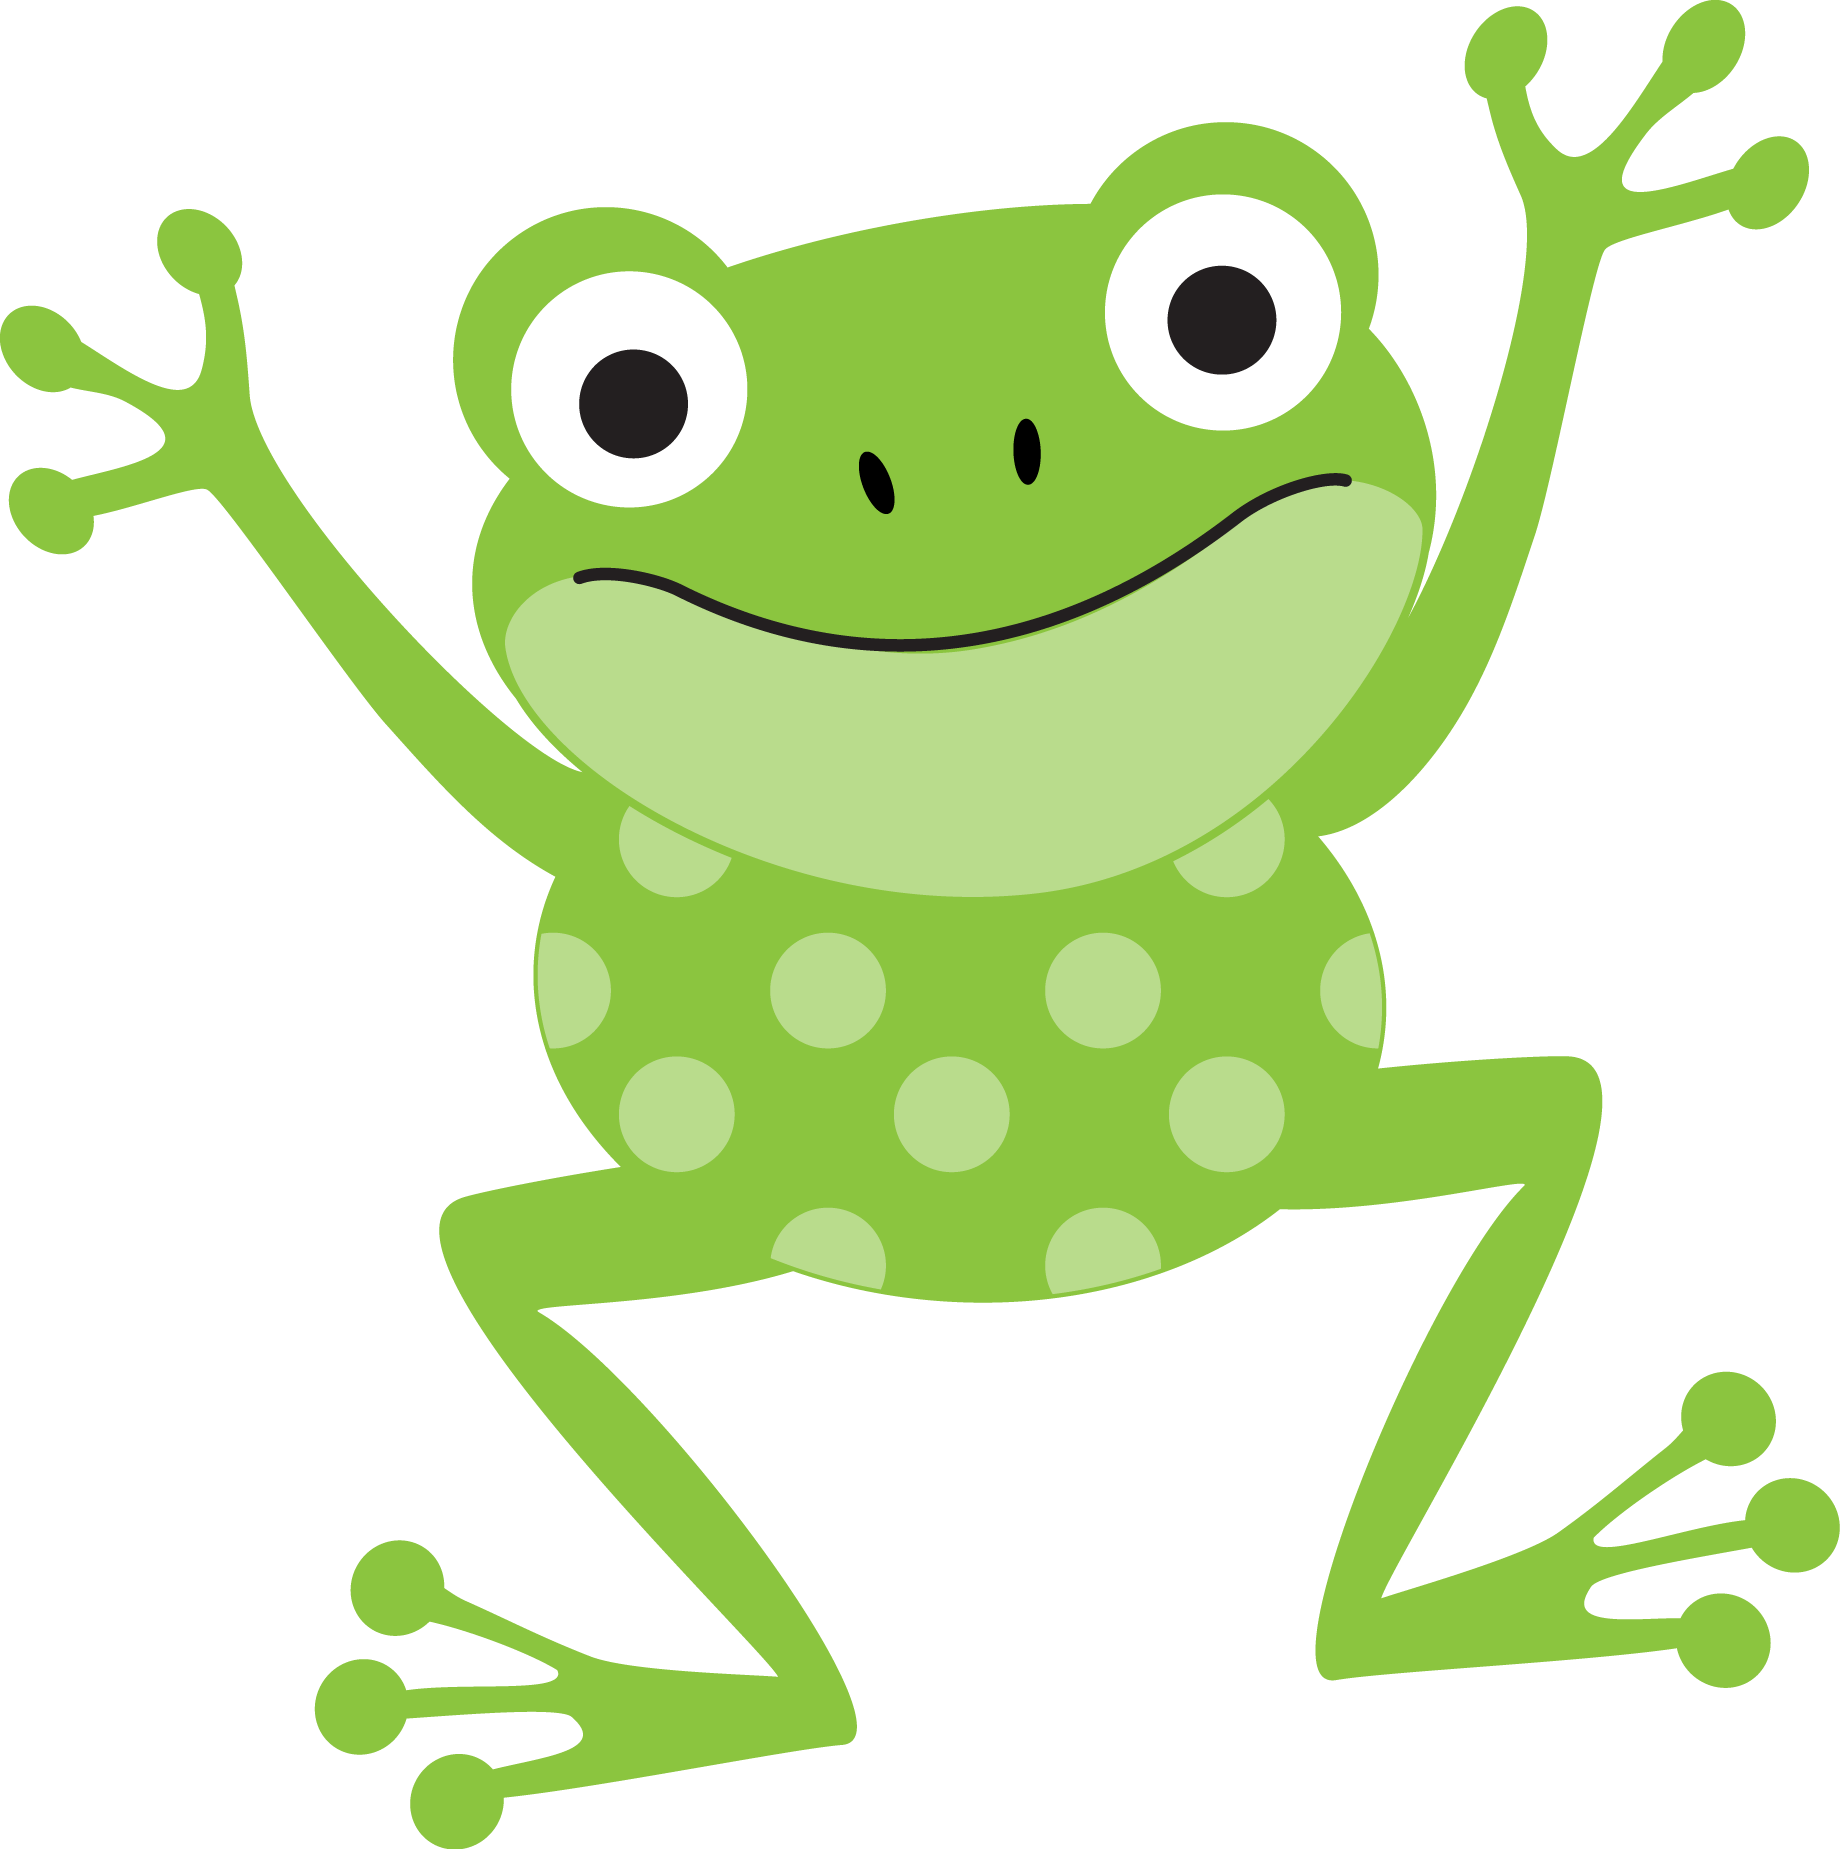 Â ‹â€¢â€¢â°â€¿âœ - Cute Frog Clip Art (1840x1849)